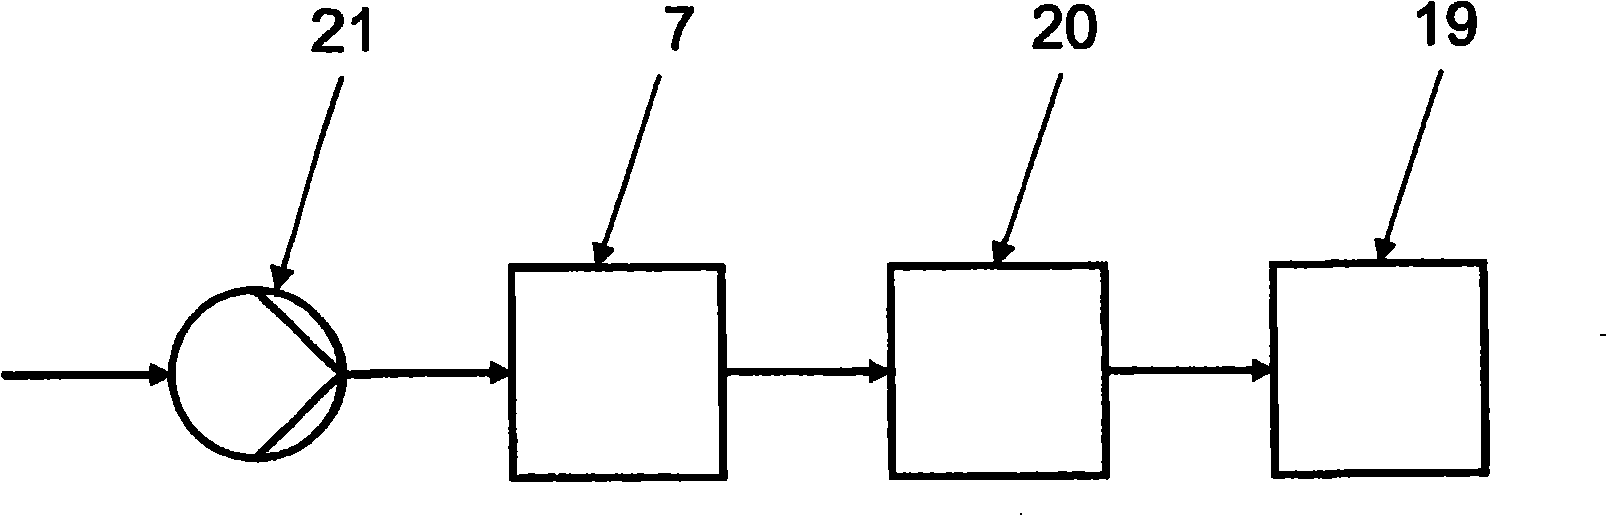 Filter arrangement